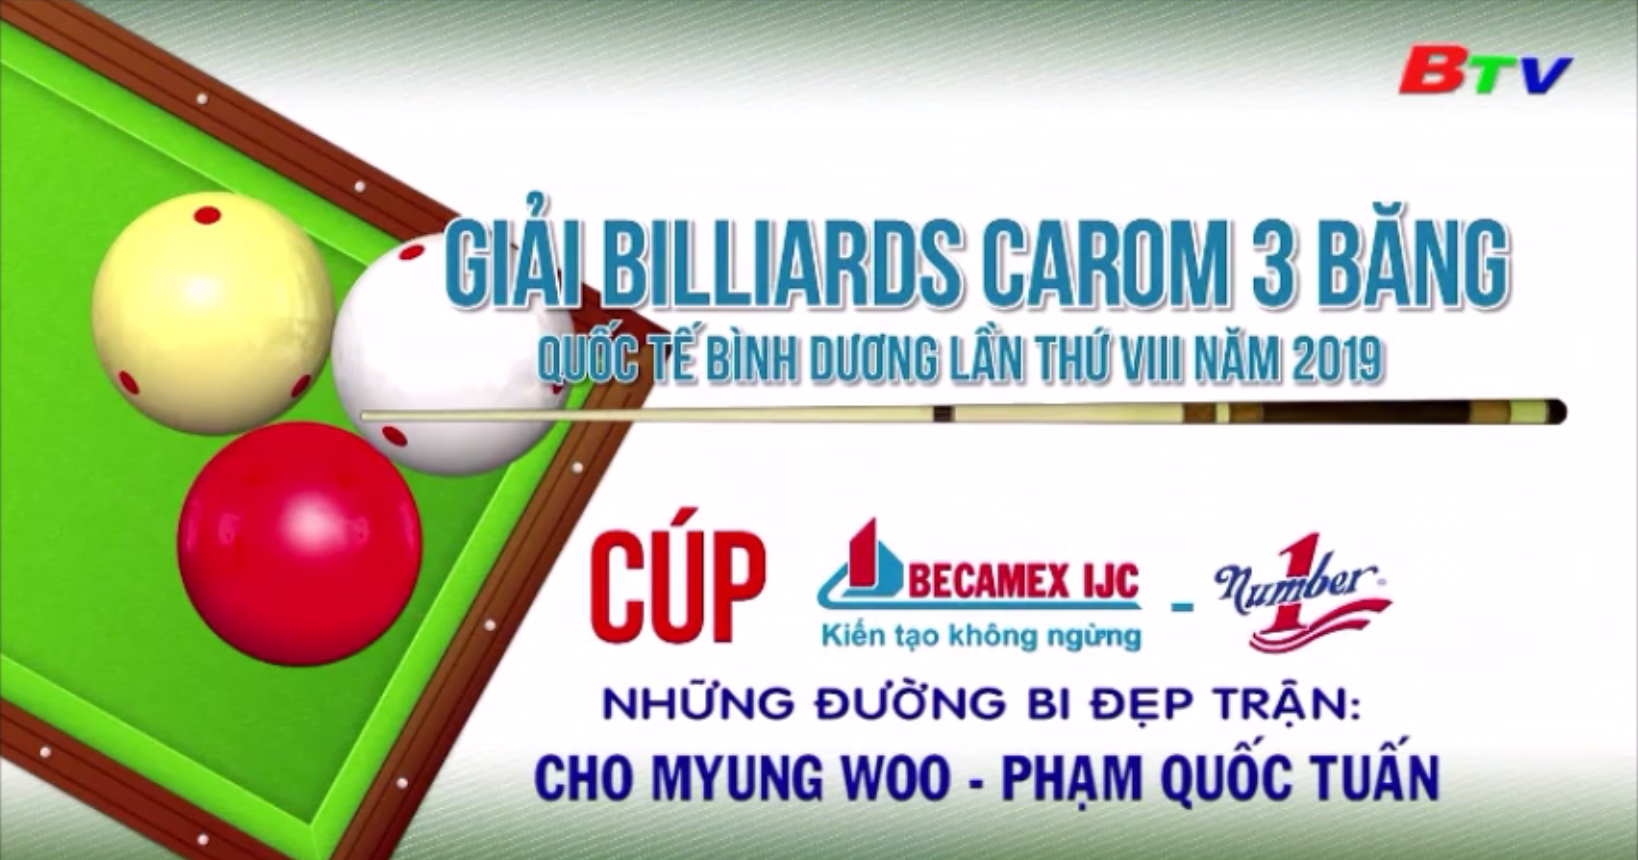 Giải Billiards Carom 3 băng Quốc tế Bình Dương lần VIII năm 2019 - Những đường bi đẹp trận Cho Myung Woo - Phạm Quốc Tuấn